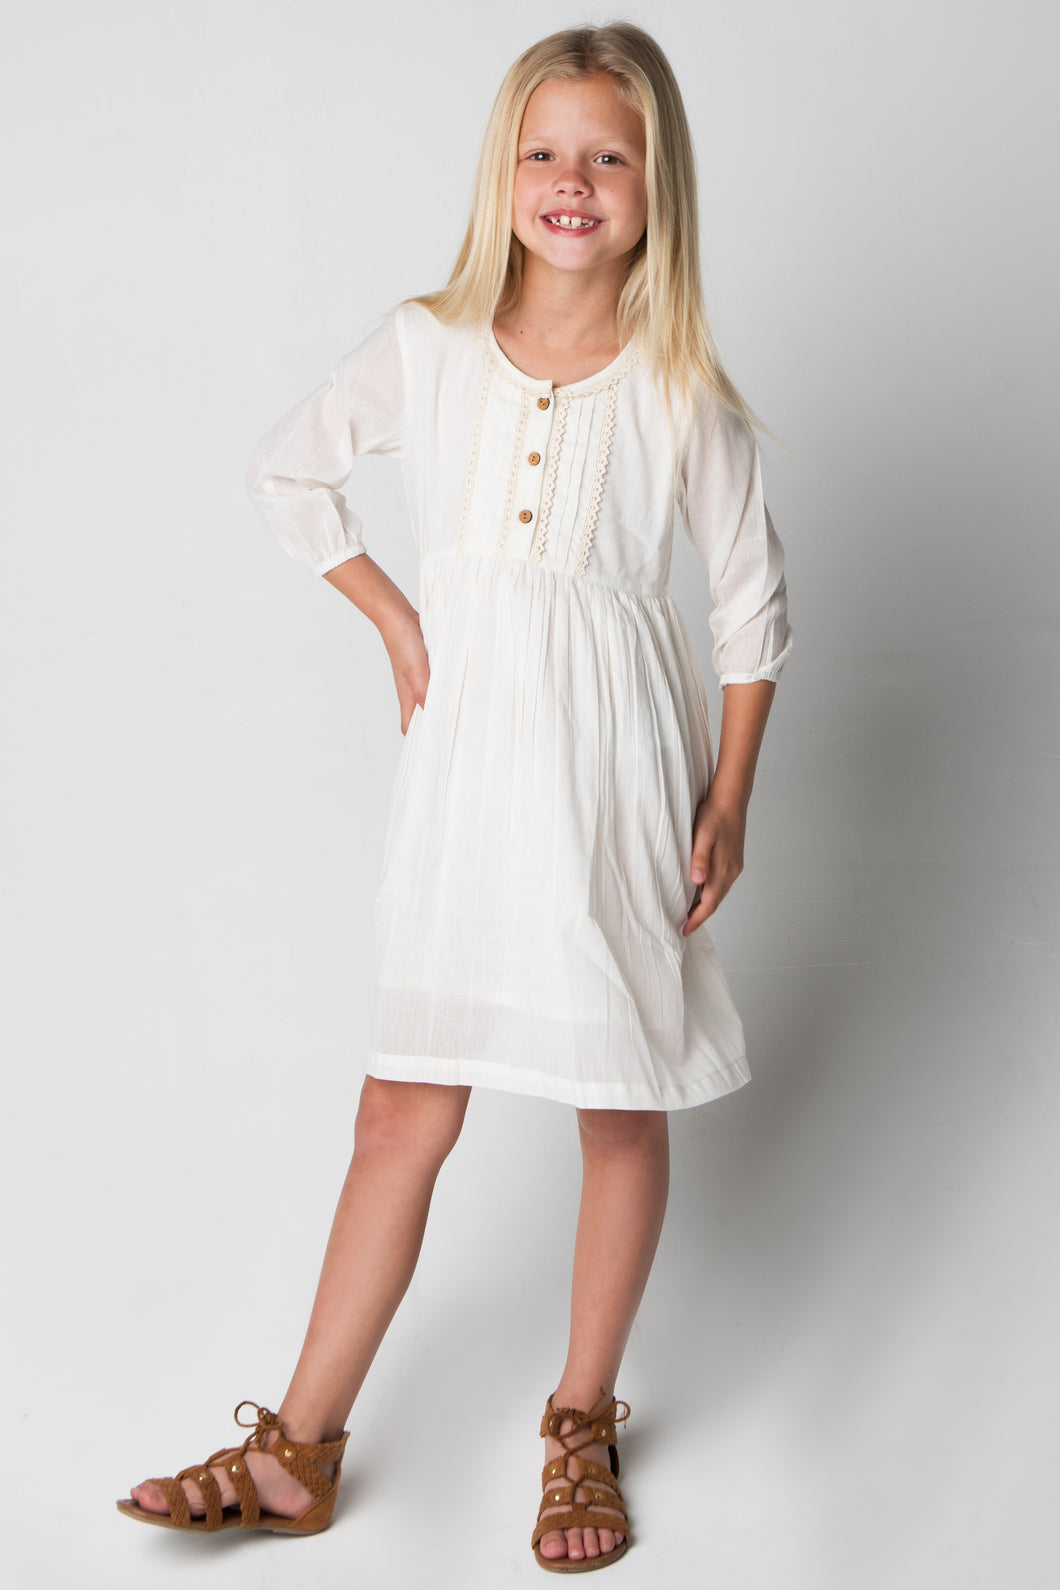 White Lace Detail Dress - Kids Wholesale Boutique Clothing, Dress - Girls Dresses, Yo Baby Wholesale - Yo Baby